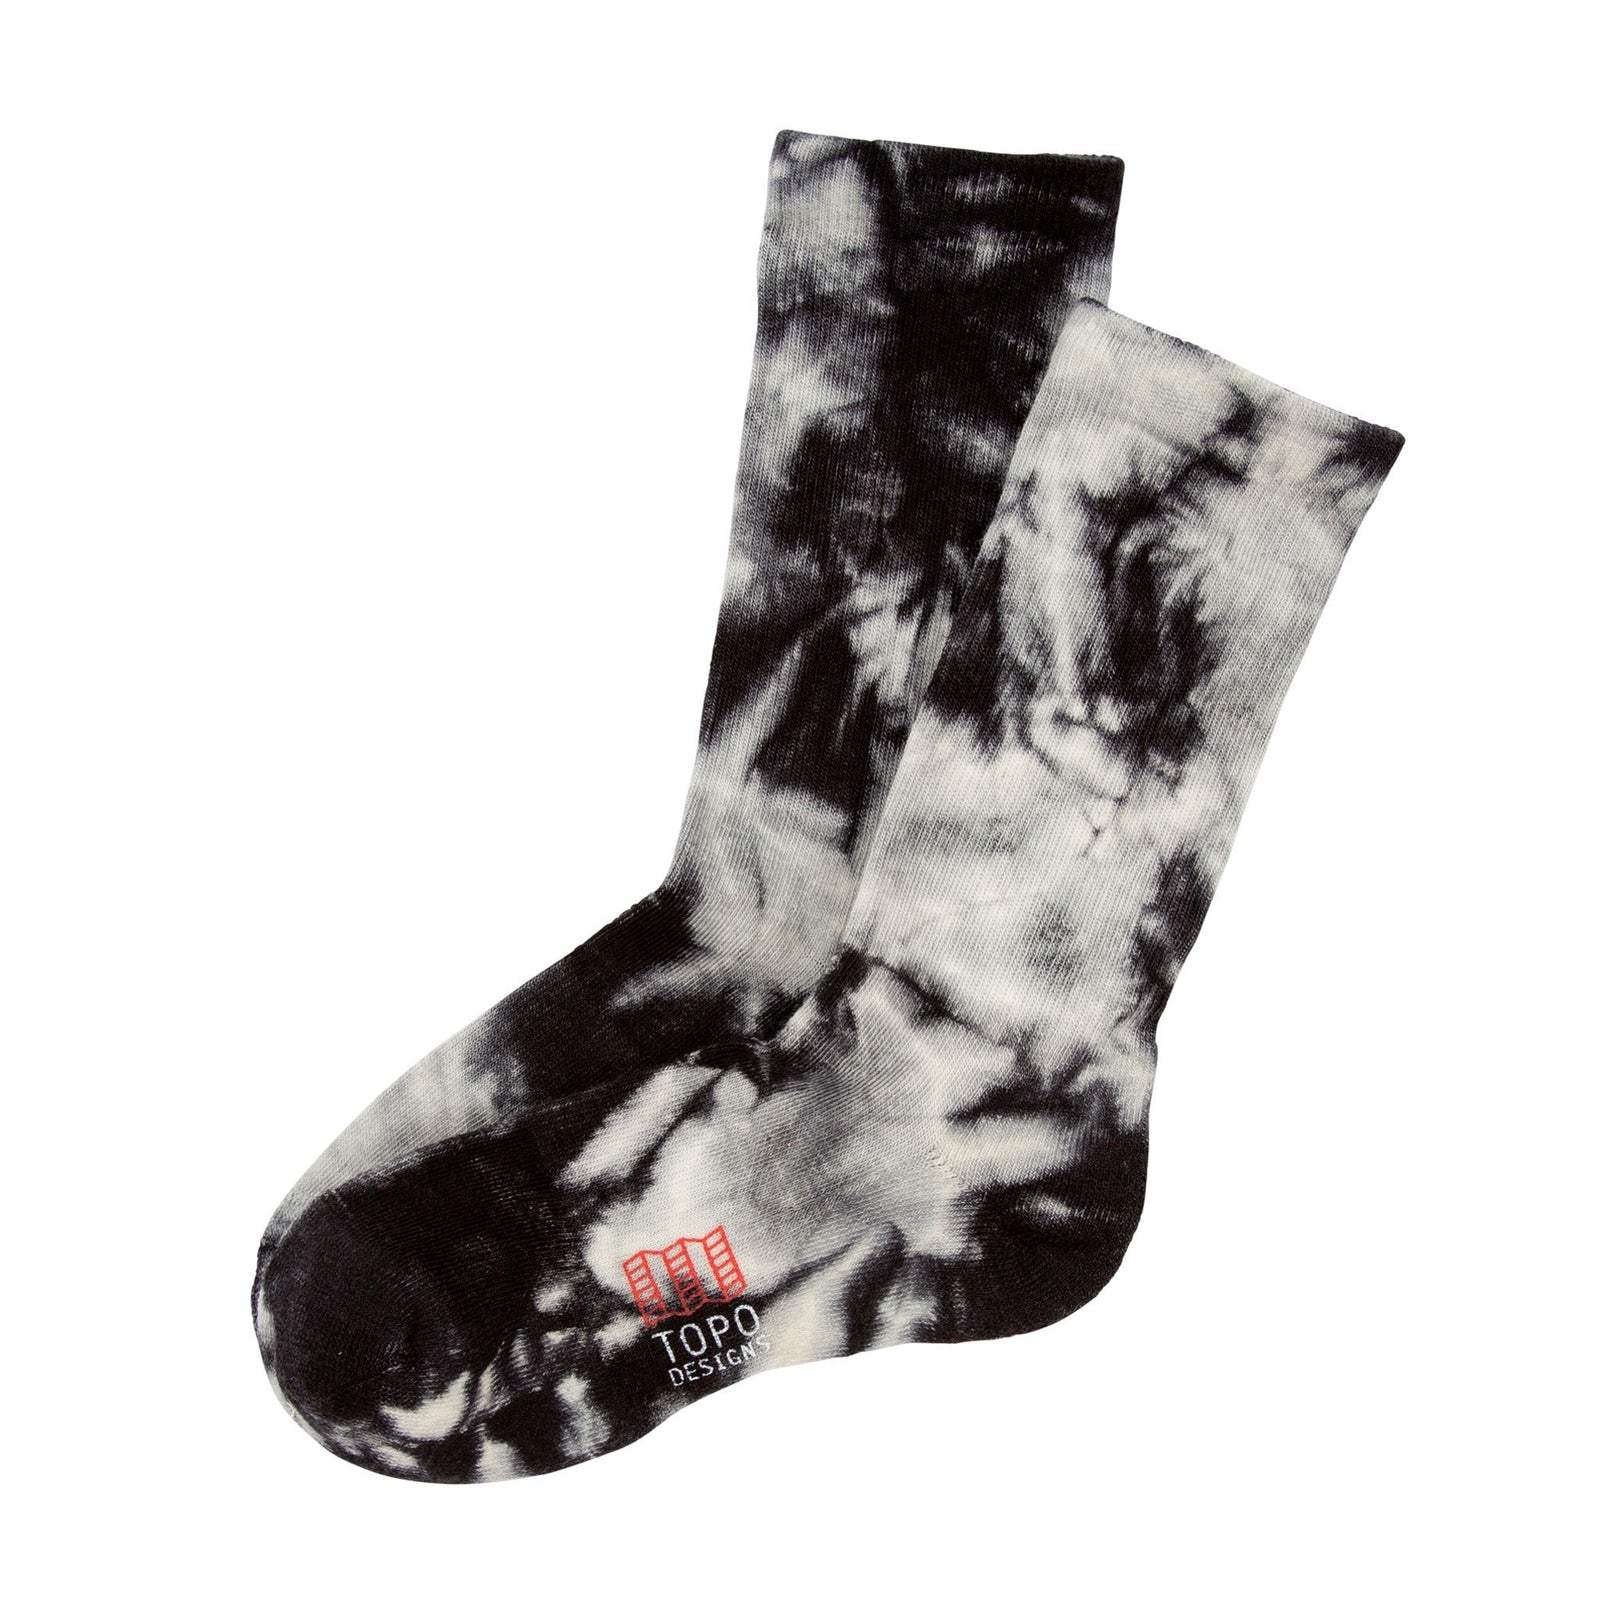 Topo Designs Topo Designs Town Socks in "Black / White Tie Dye".